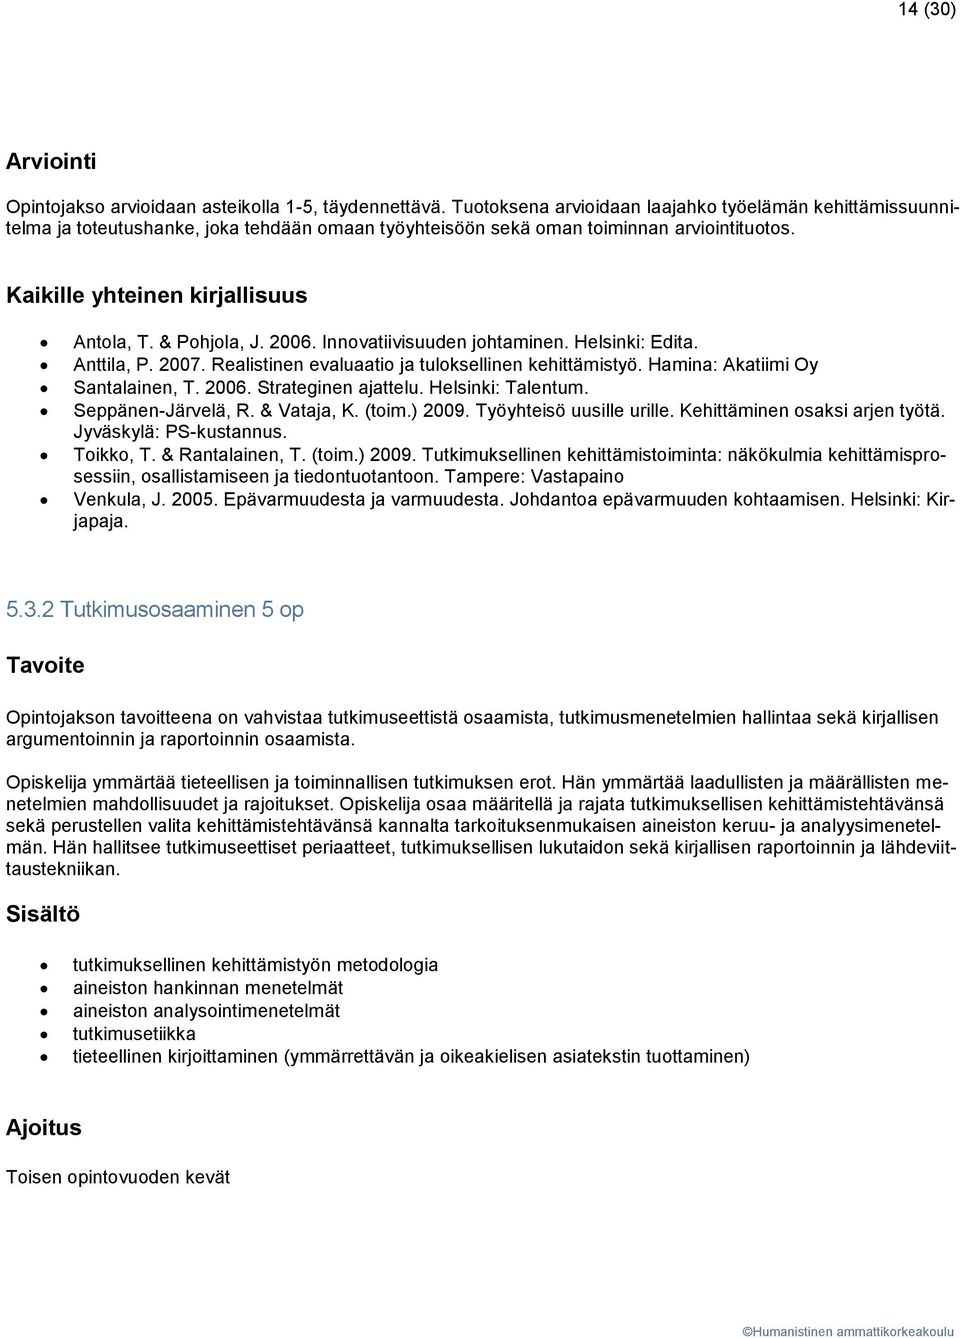 & Pohjola, J. 2006. Innovatiivisuuden johtaminen. Helsinki: Edita. Anttila, P. 2007. Realistinen evaluaatio ja tuloksellinen kehittämistyö. Hamina: Akatiimi Oy Santalainen, T. 2006. Strateginen ajattelu.